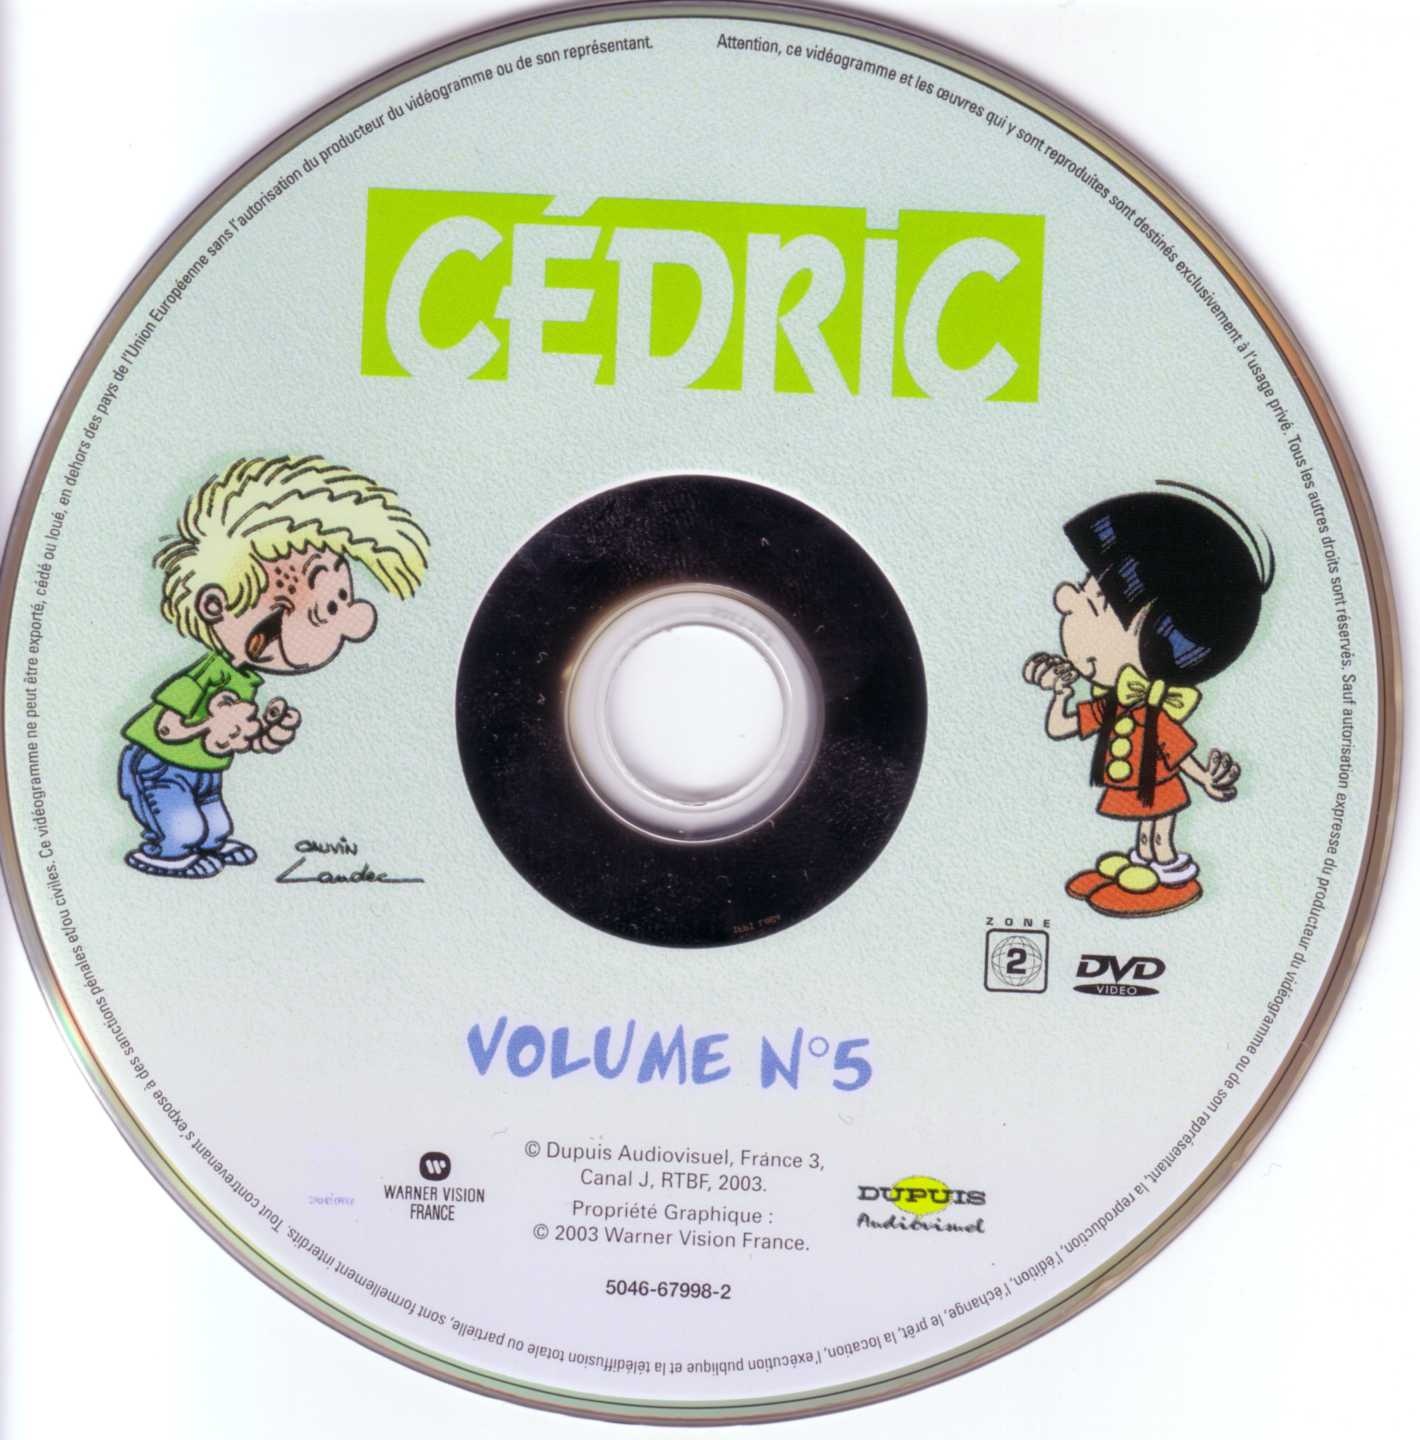 Cedric vol 05